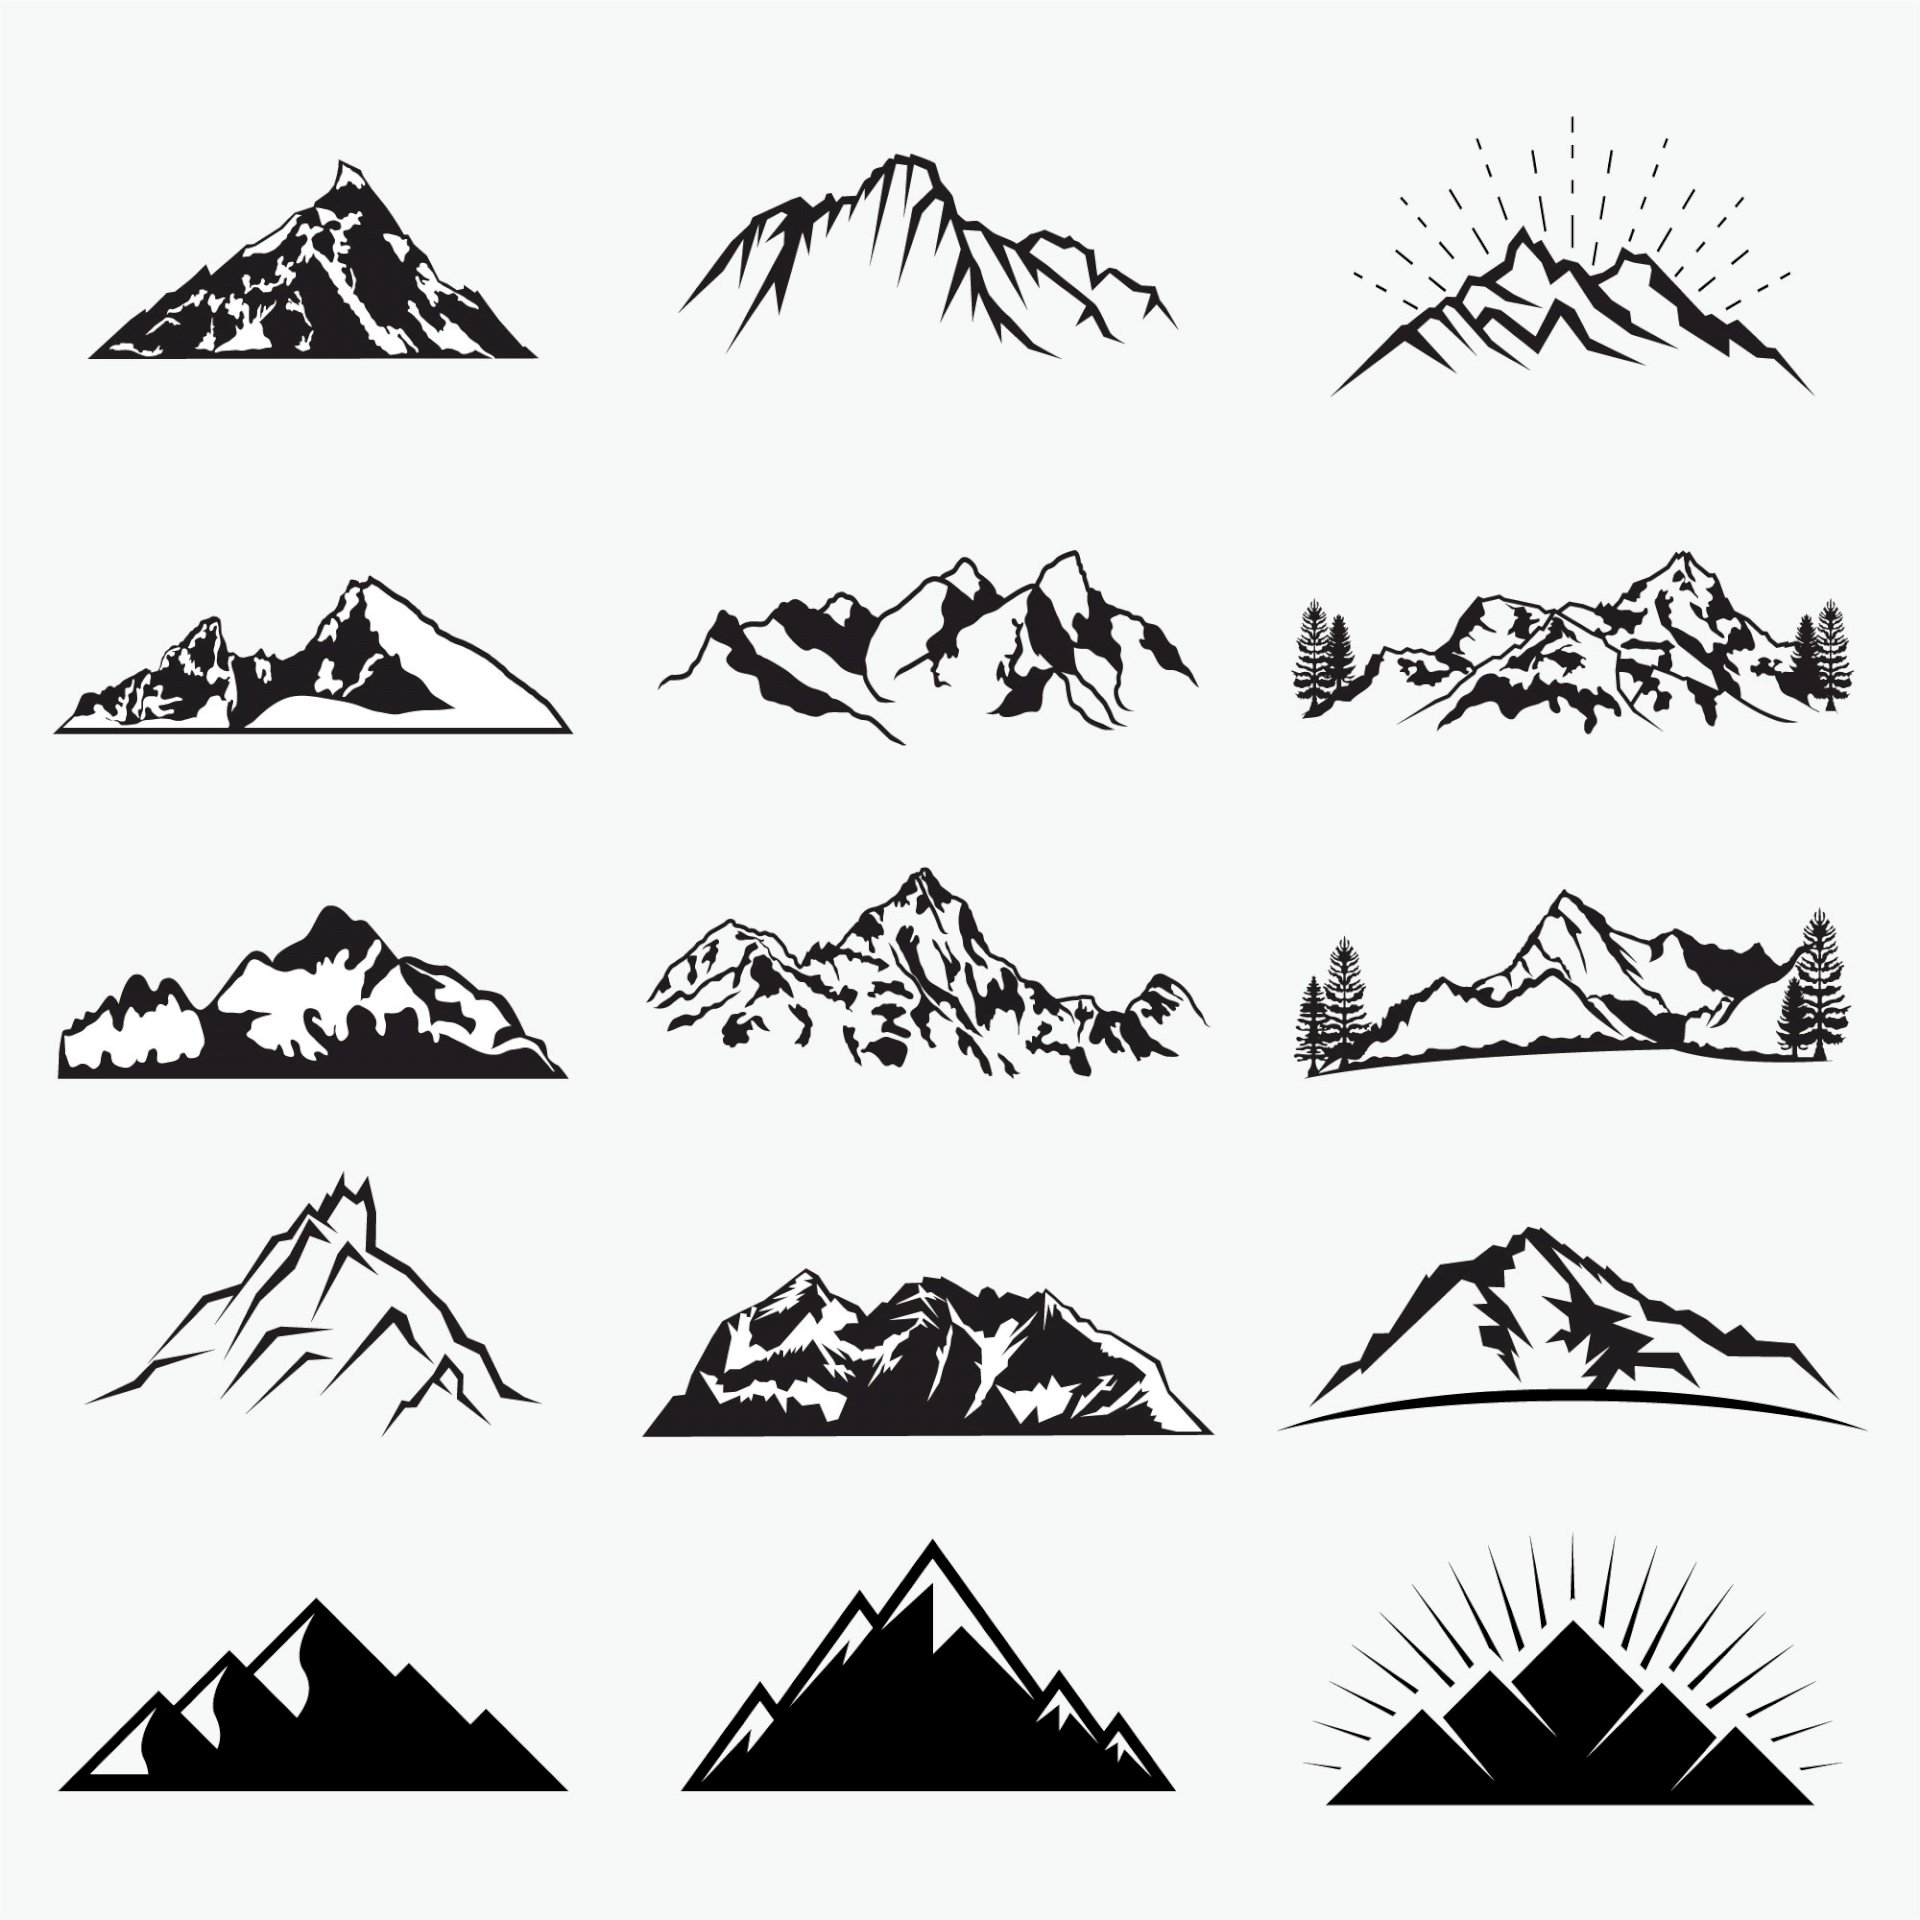 ngọn núi phim hoạt hình  Vẽ tay treo Đảo png tải về  Miễn phí trong suốt  Nghệ Thuật png Tải về